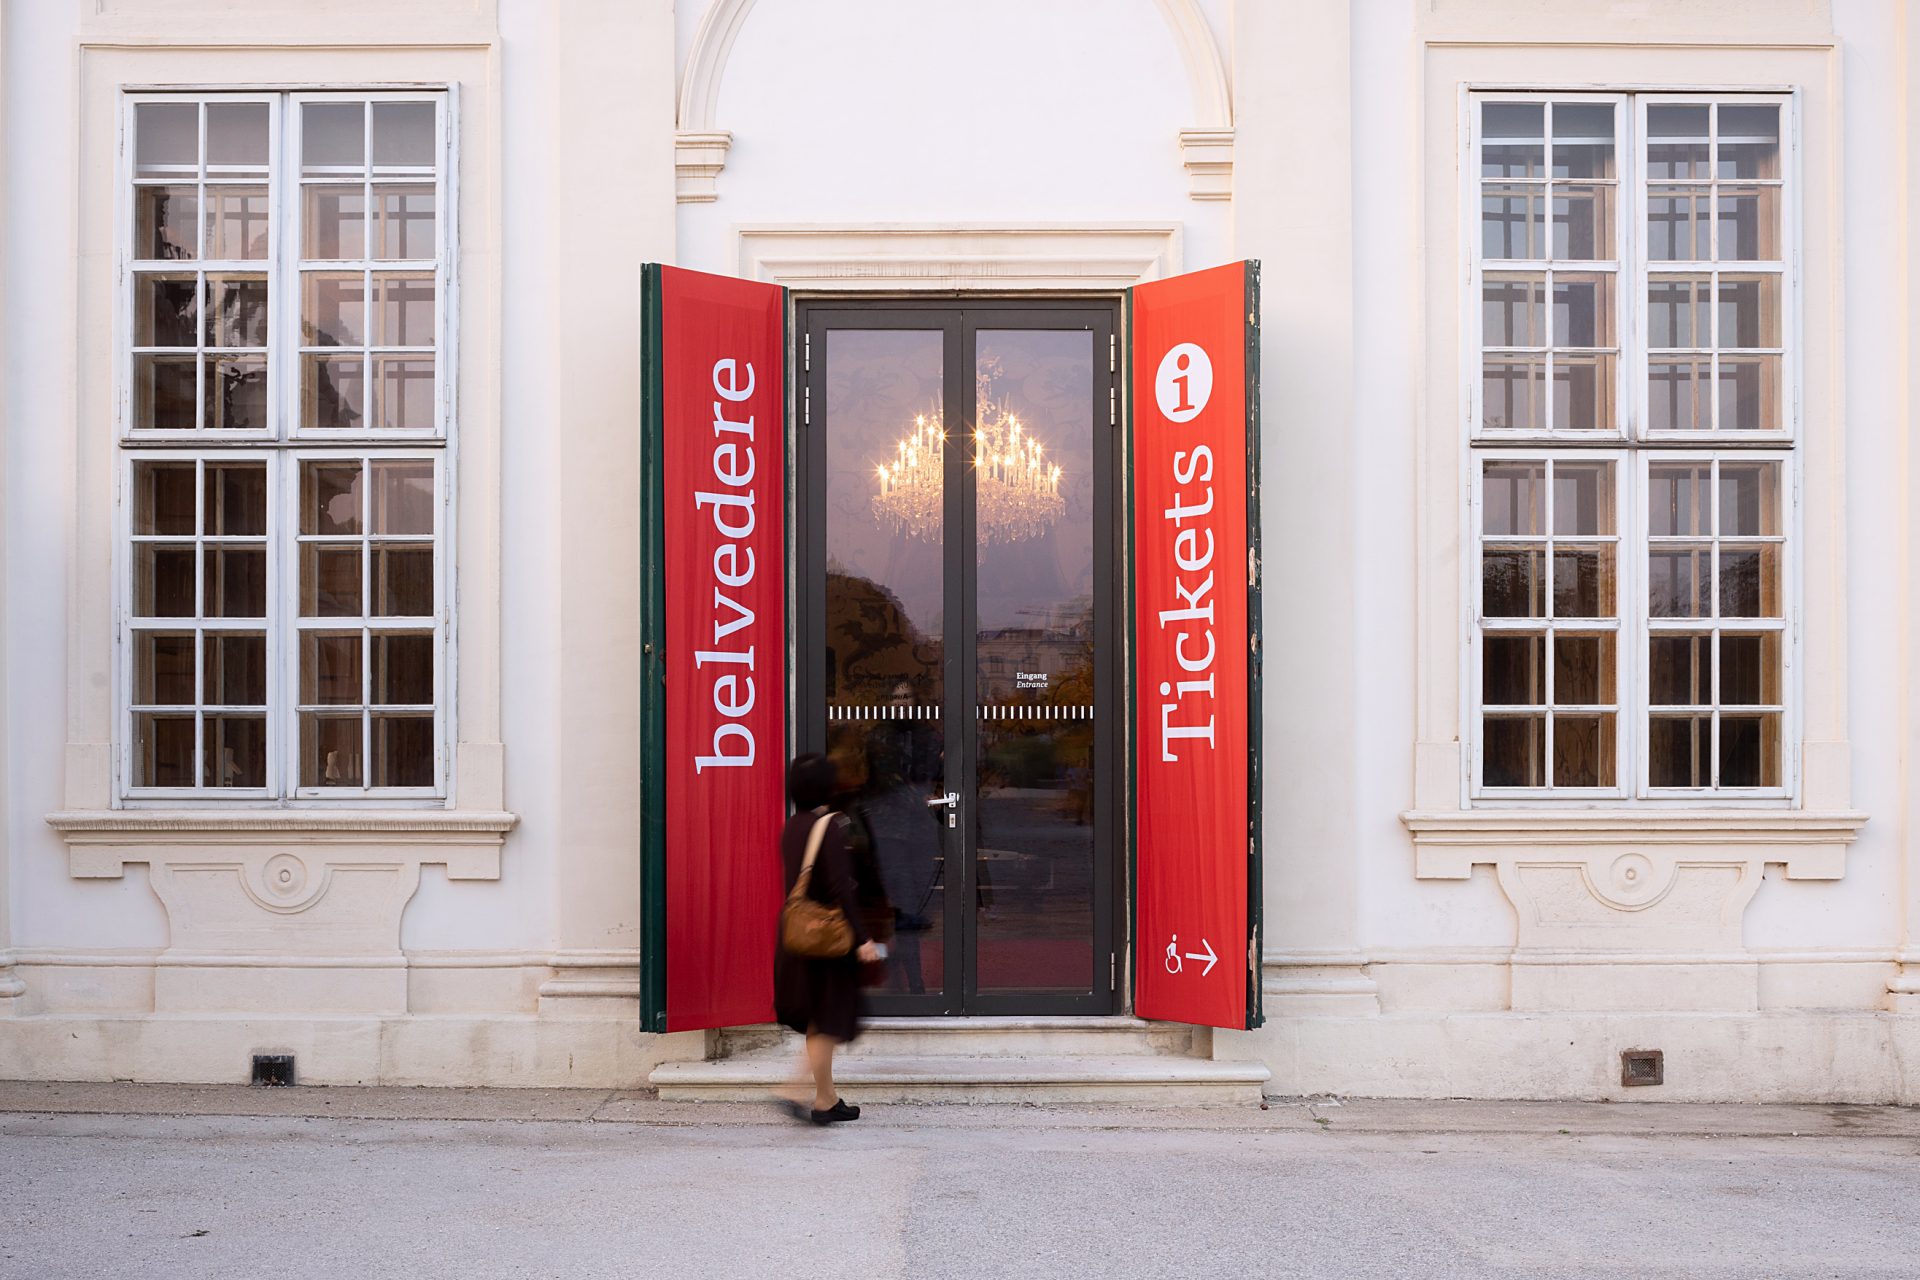 Eingangstüre aus Glas mit Seitenflügeln auf denen rote Fahnen angebracht sind, links steht Belvedere, rechts steht Tickets und Information